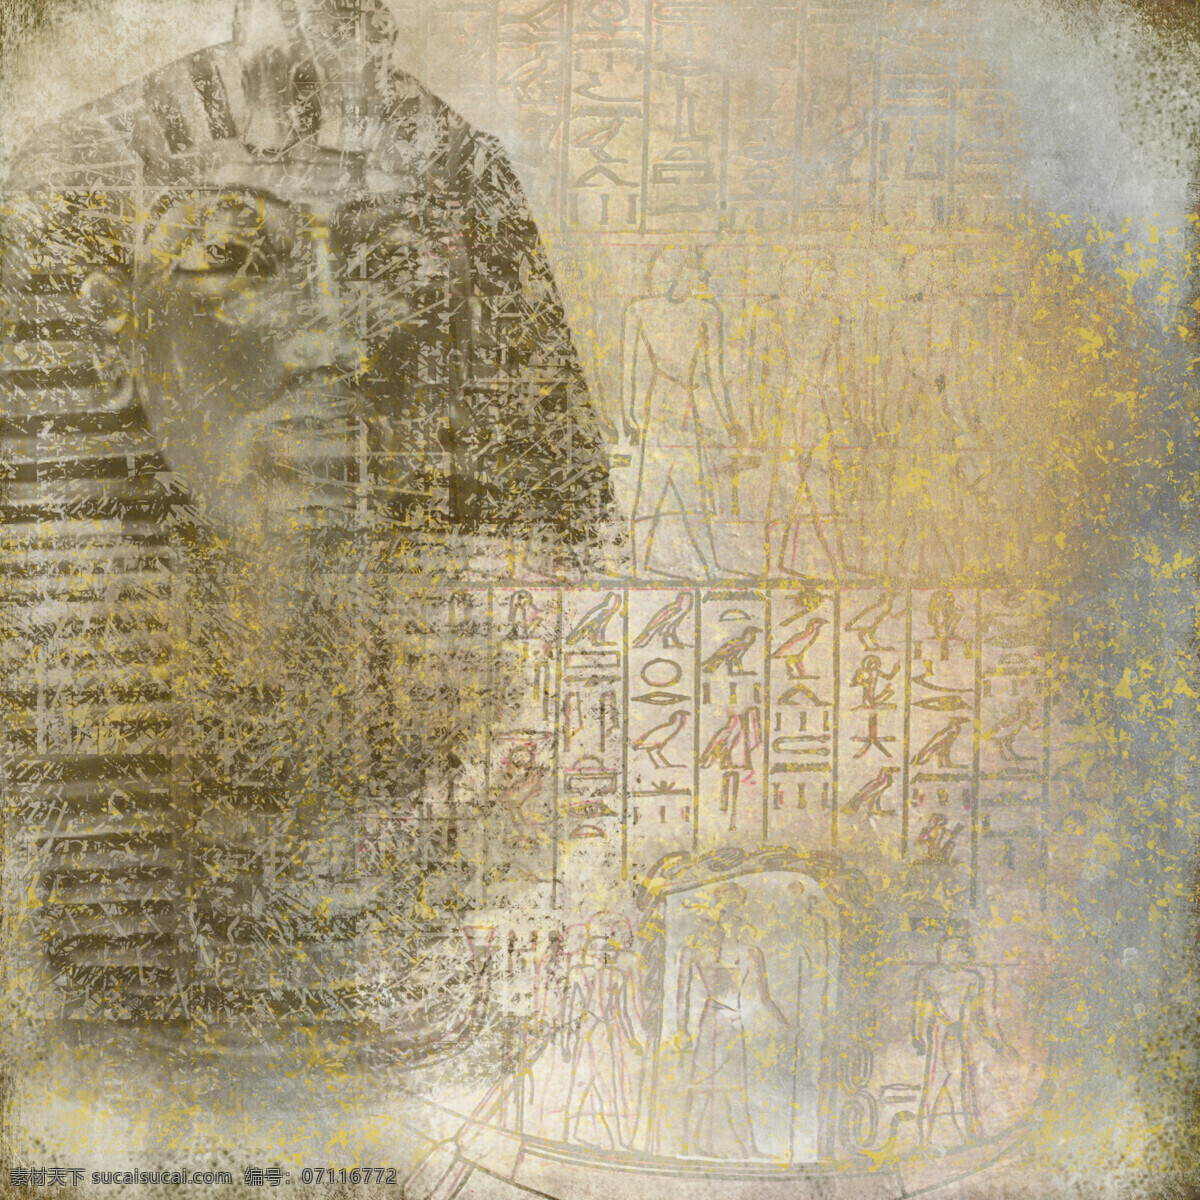 埃及 法老 图案 背景 埃及法老 埃及传统图案 埃及图腾 埃及壁画 古埃及文化 传统图案 文化艺术